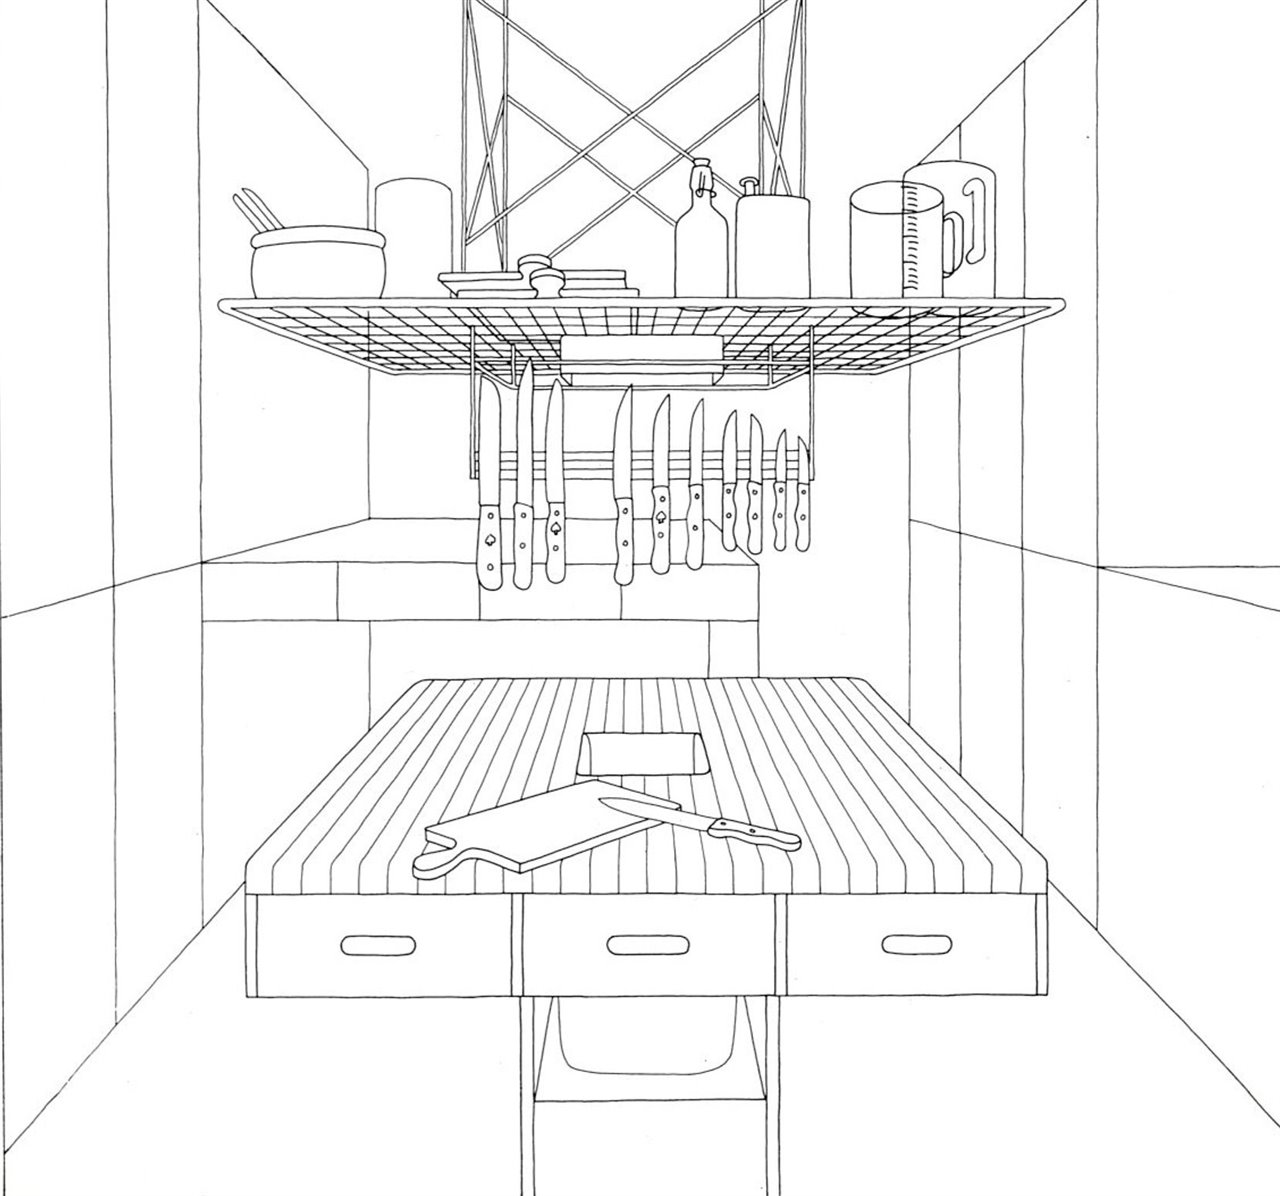 Ilustración para la portada del libro "Die Küche zum Kochen: Das Ende einer Architekturdoktrin" (La cocina para cocinar: el final de una doctrina arquitectónica), editado por bulthaup, 1982.